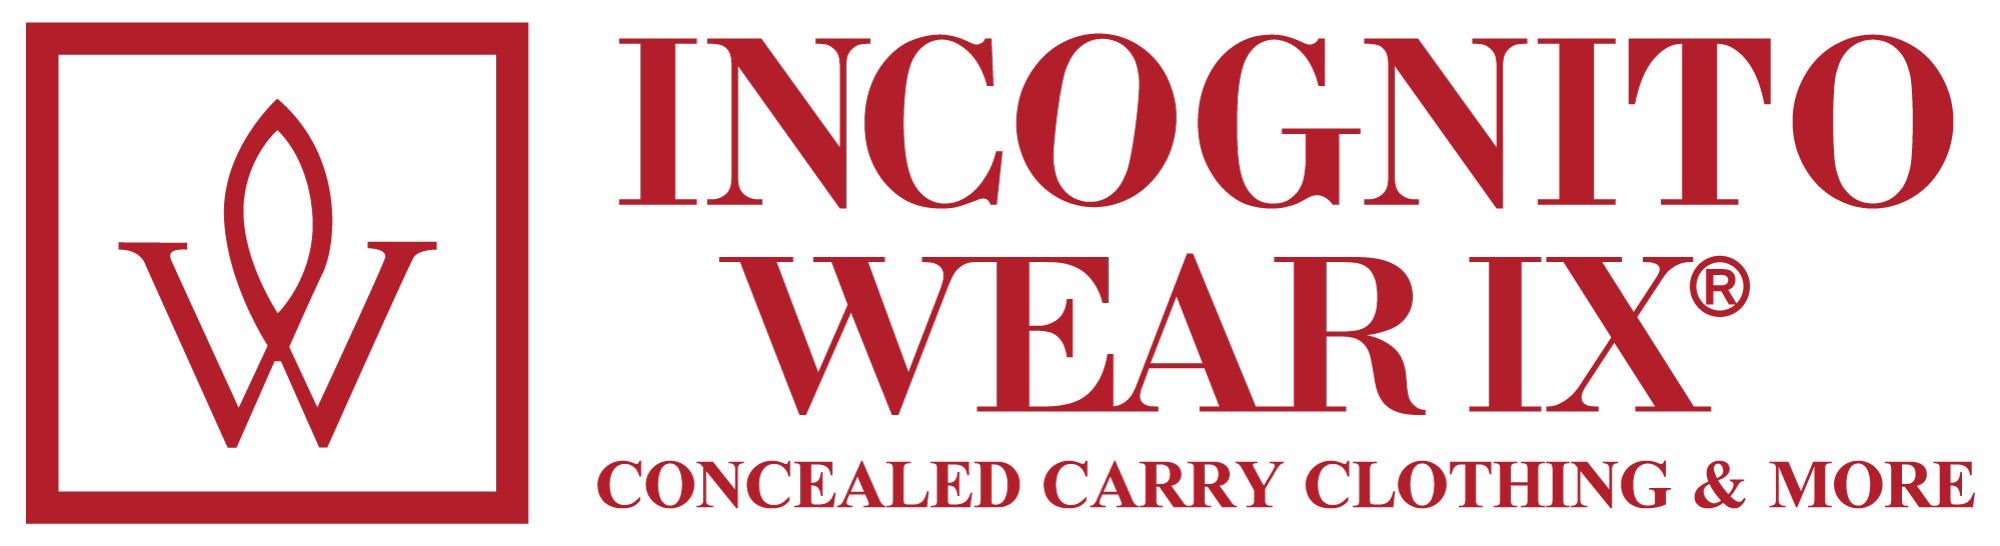 Incognito Wear IX